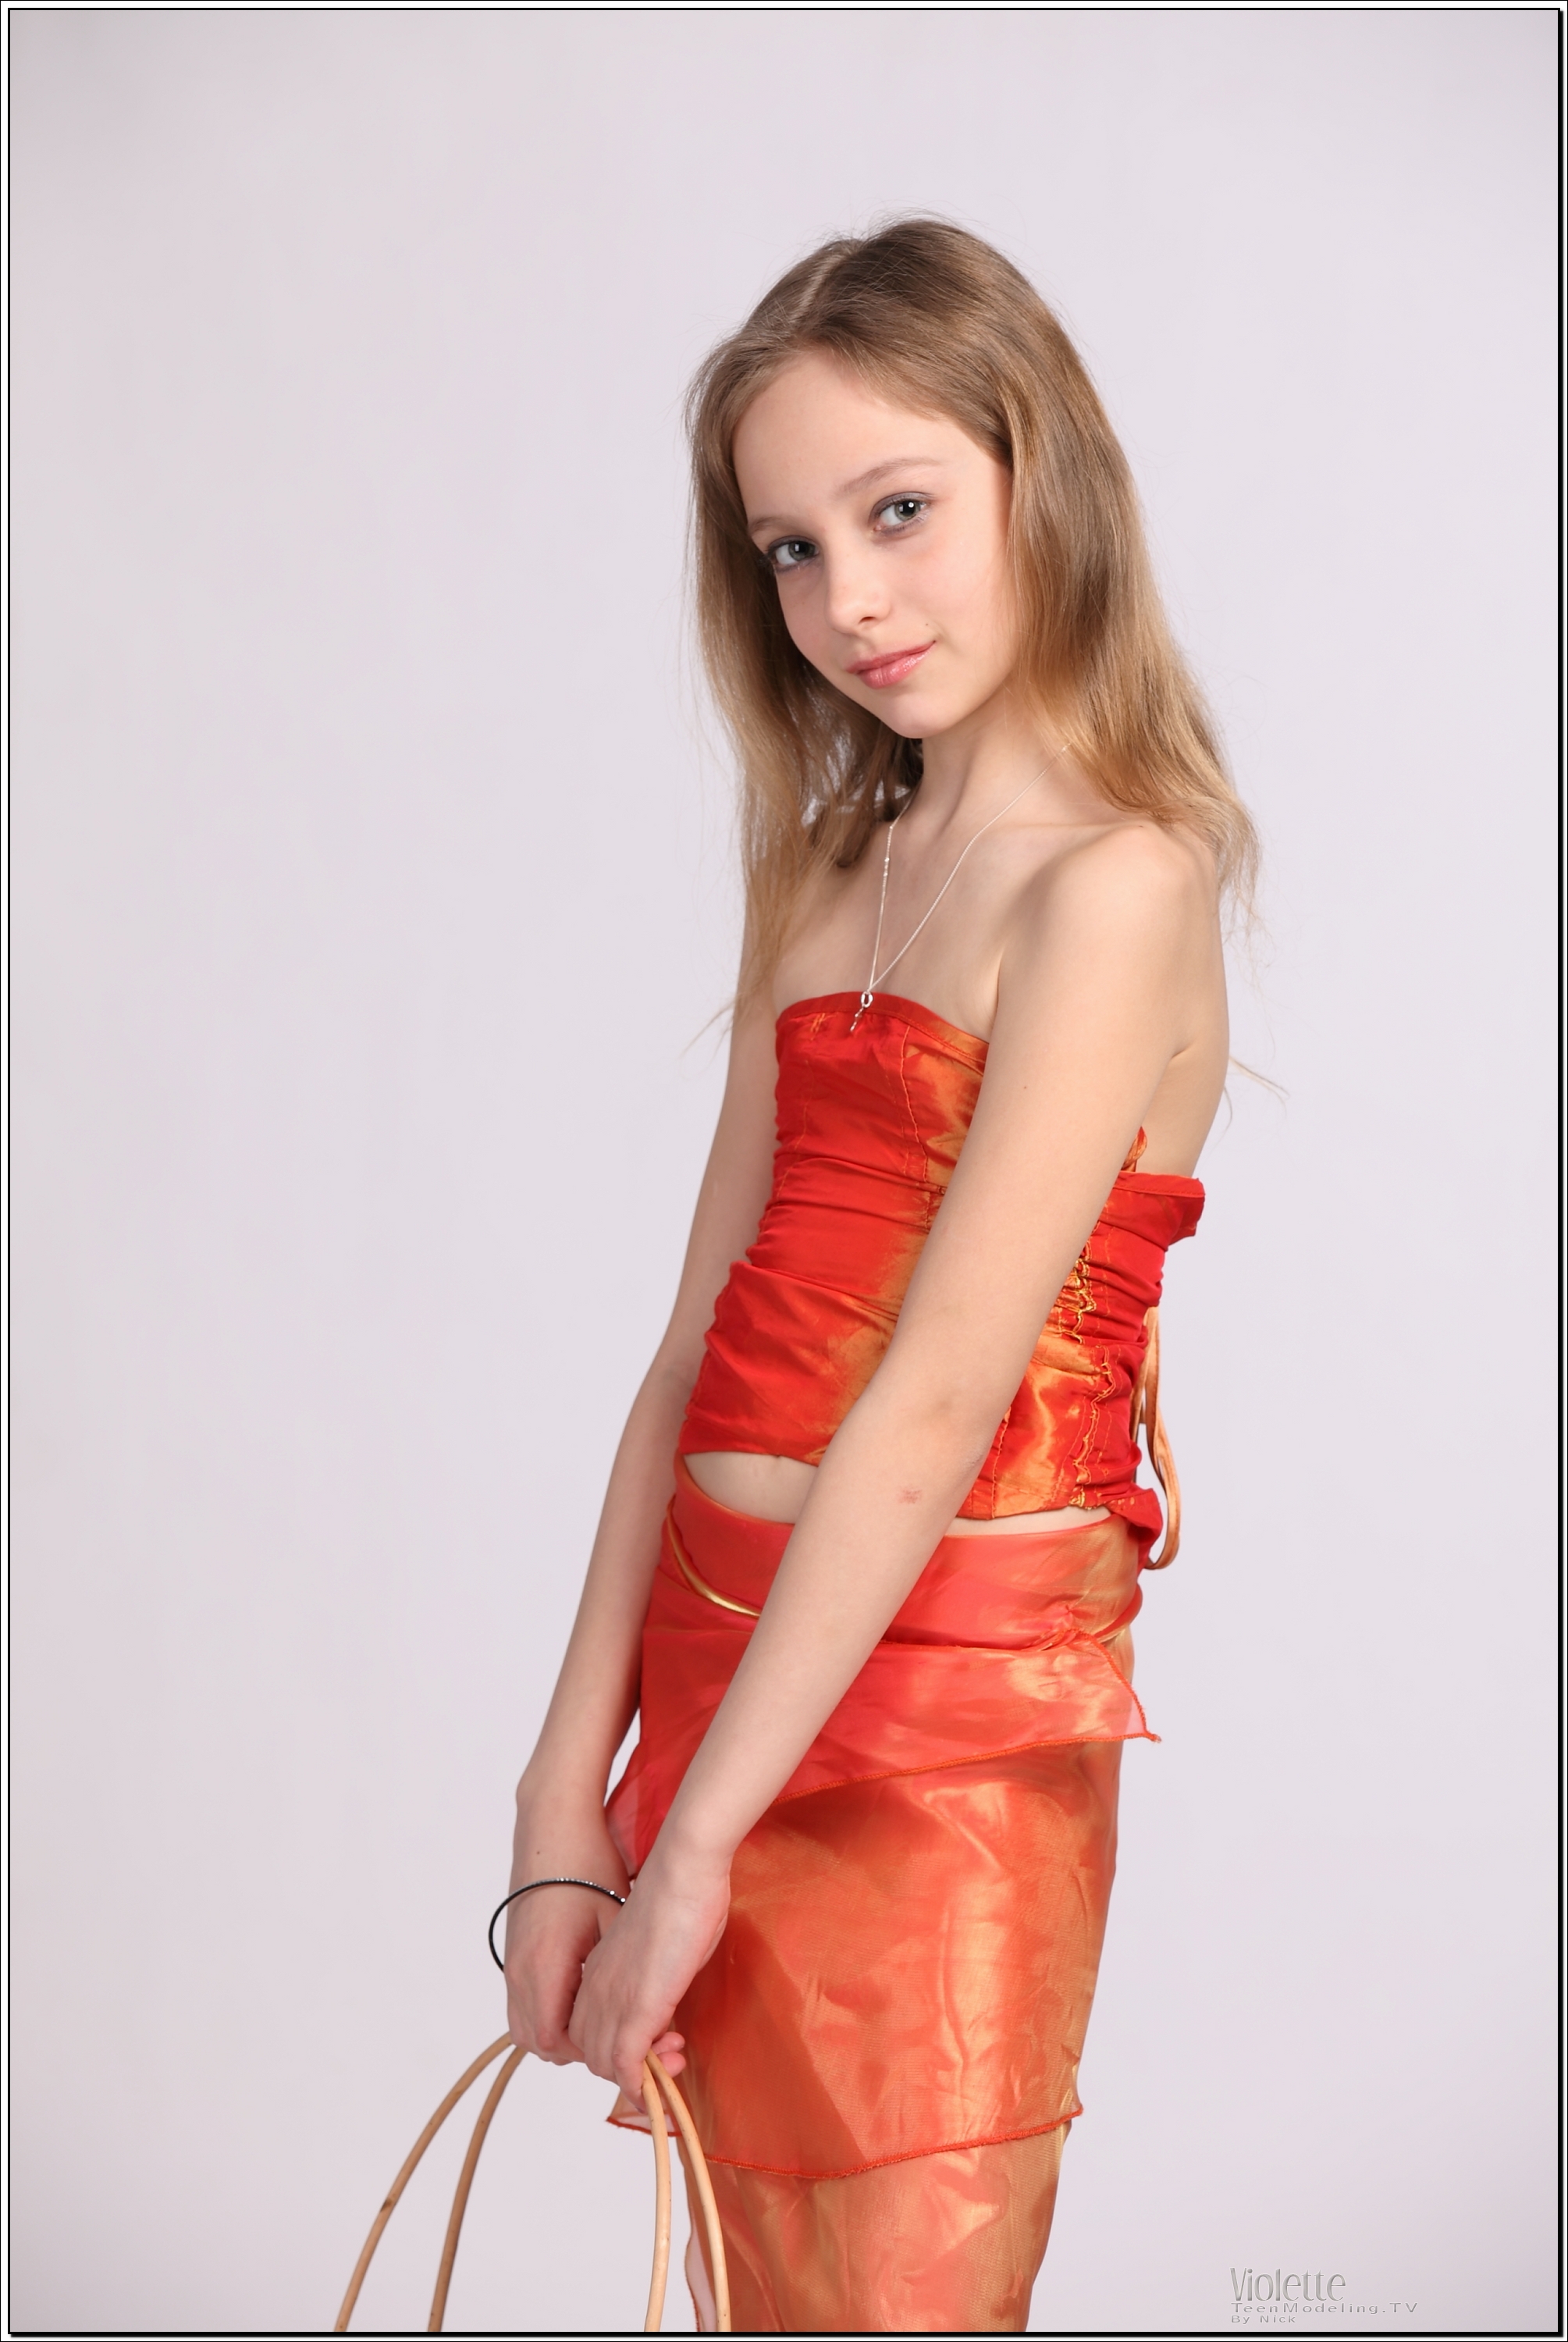 violette_model_orangesheer_teenmodeling_tv_004.jpg